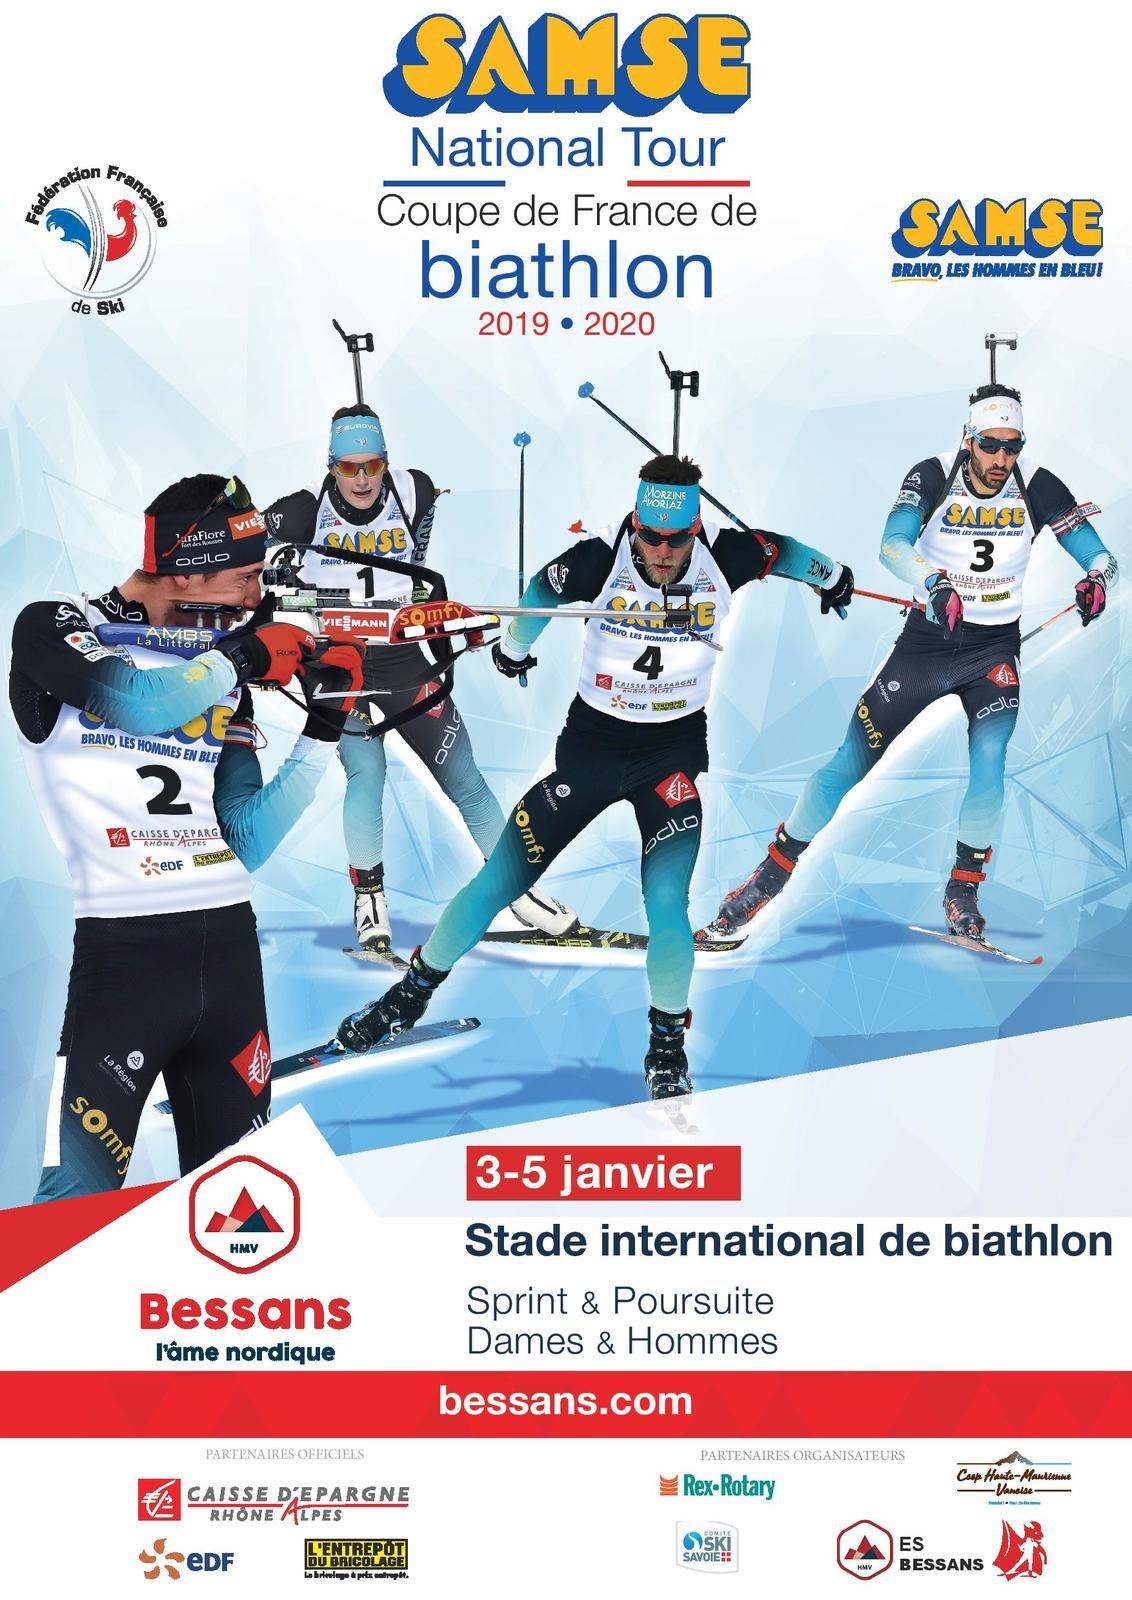 2ième Etape du Samse national Tour Biathlon à Bessans